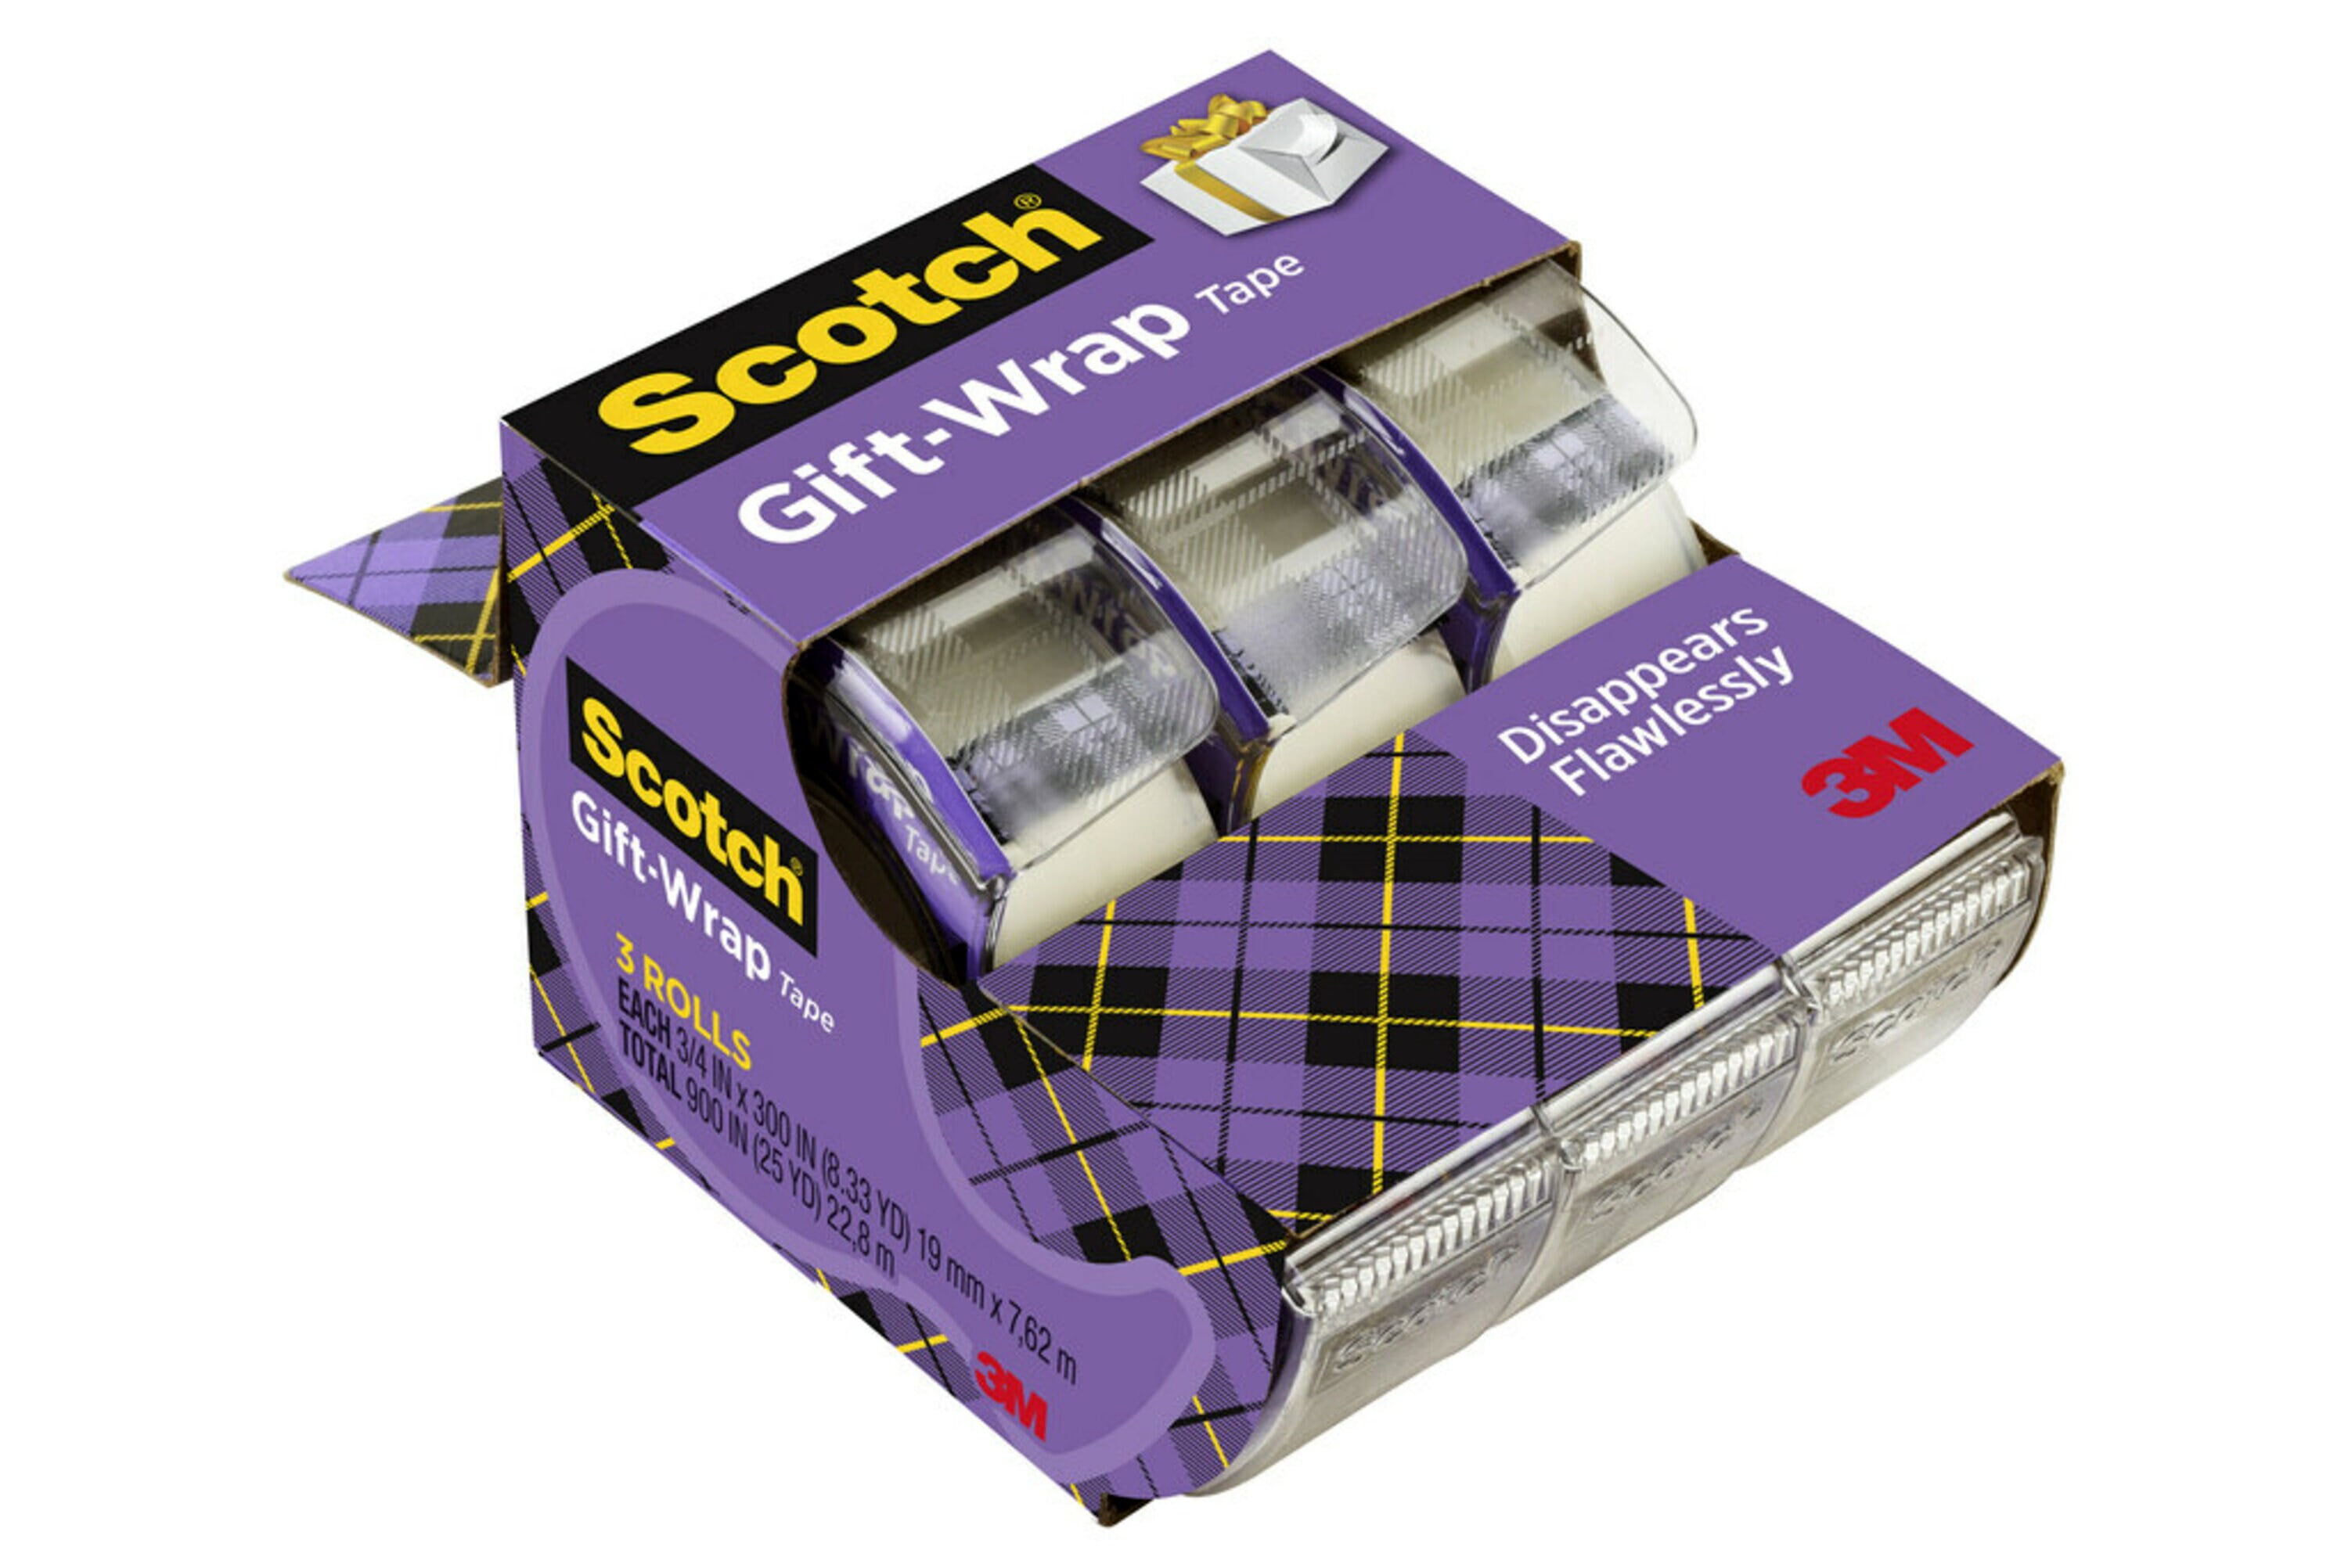 Scotch All Purpose Permanent Glue Stick, 0.28 oz, 24-Pack 